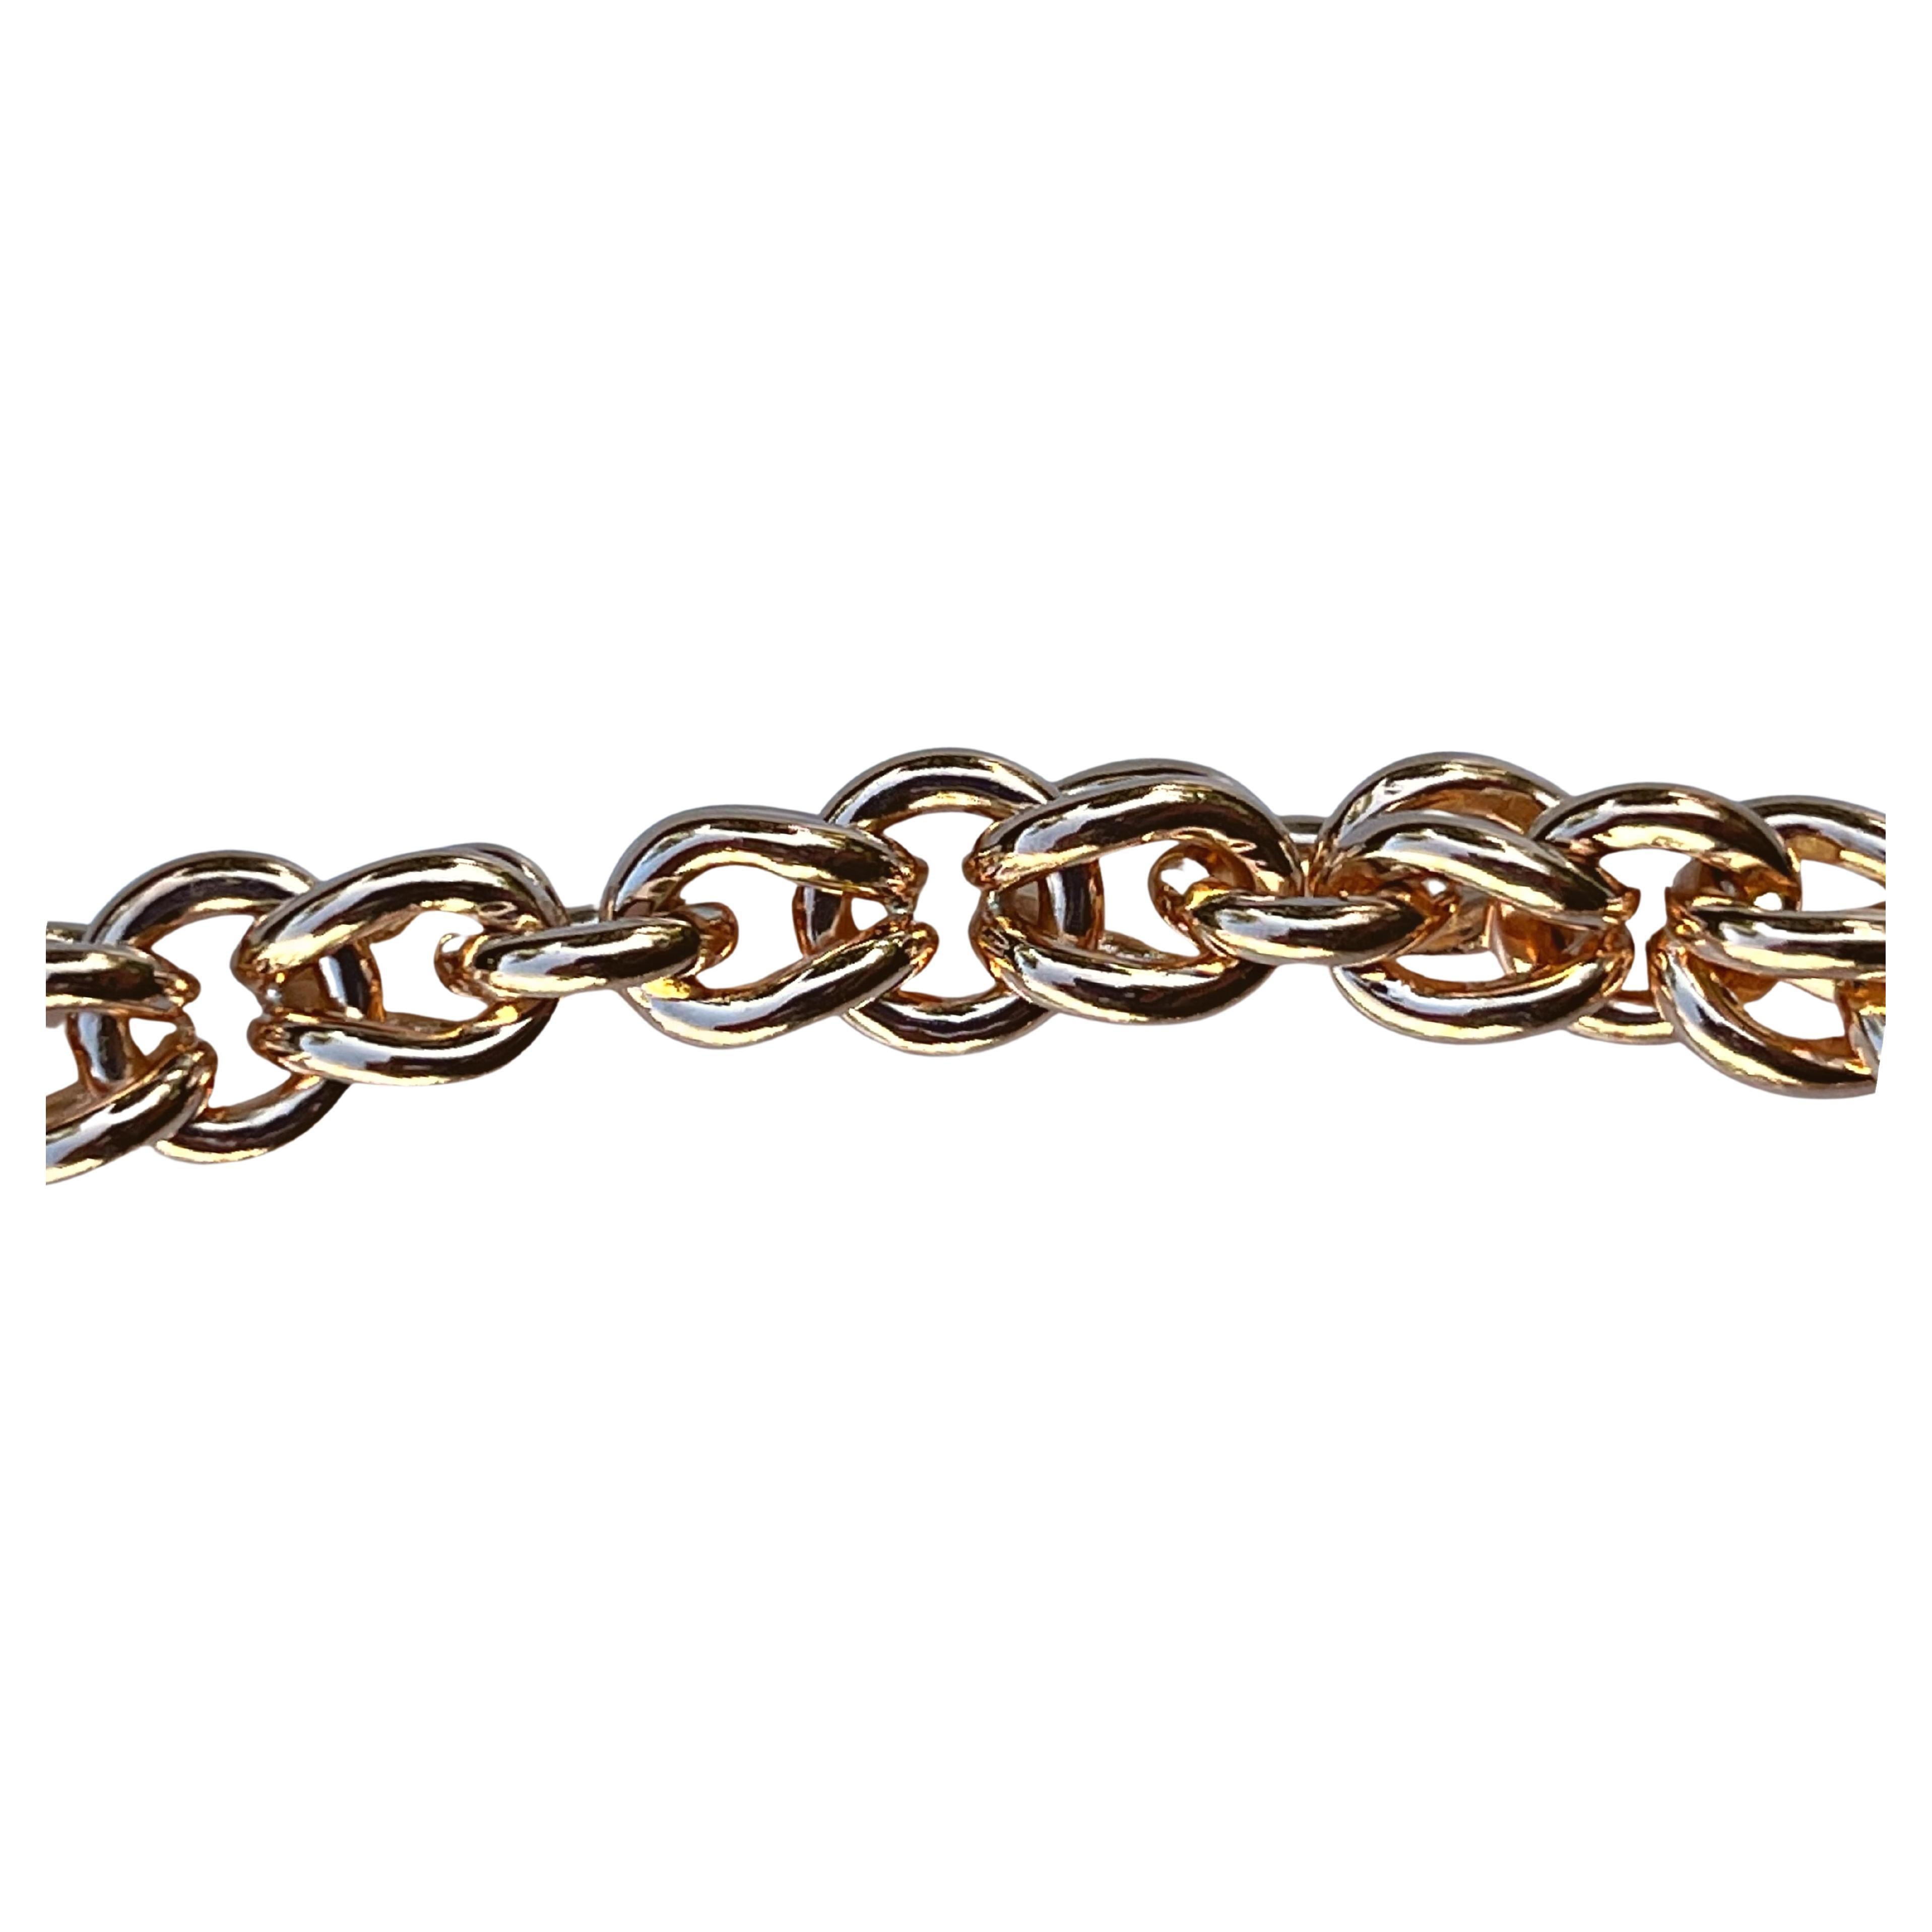 Bracelet en chaîne de blé en or rose massif 20 carats. Ce bracelet présente une finition extra lisse et brillante grâce à sa grande pureté d'or. Le maquillage en or 20 carats fait de cette pièce 83% d'or pur. 

Ce bracelet est un mélange parfait